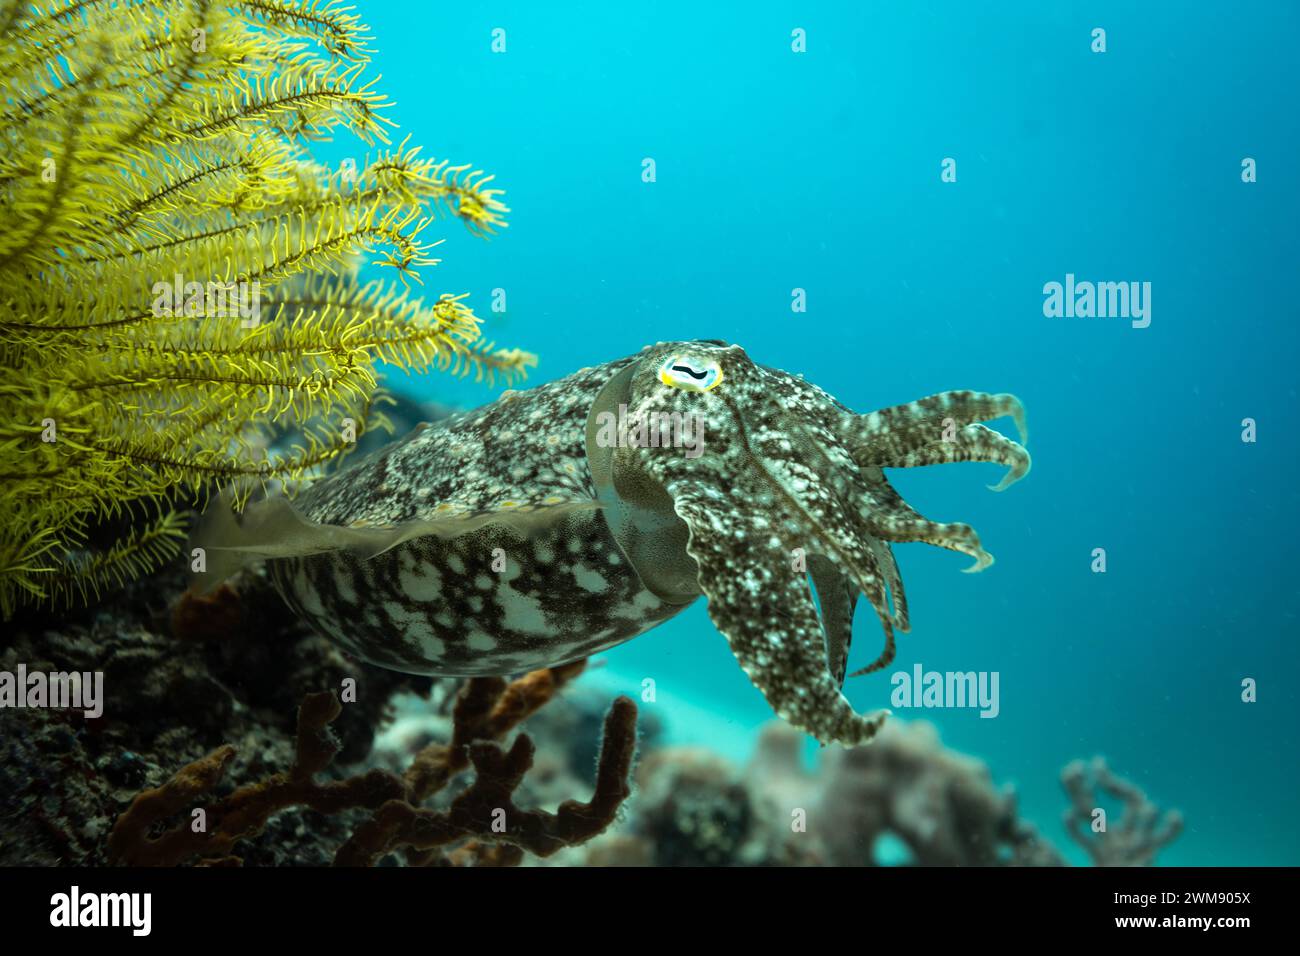 Cuddlefish, Sepiida, nageant le long du récif corallien tropical affichant un camouflage tacheté brun et blanc Banque D'Images